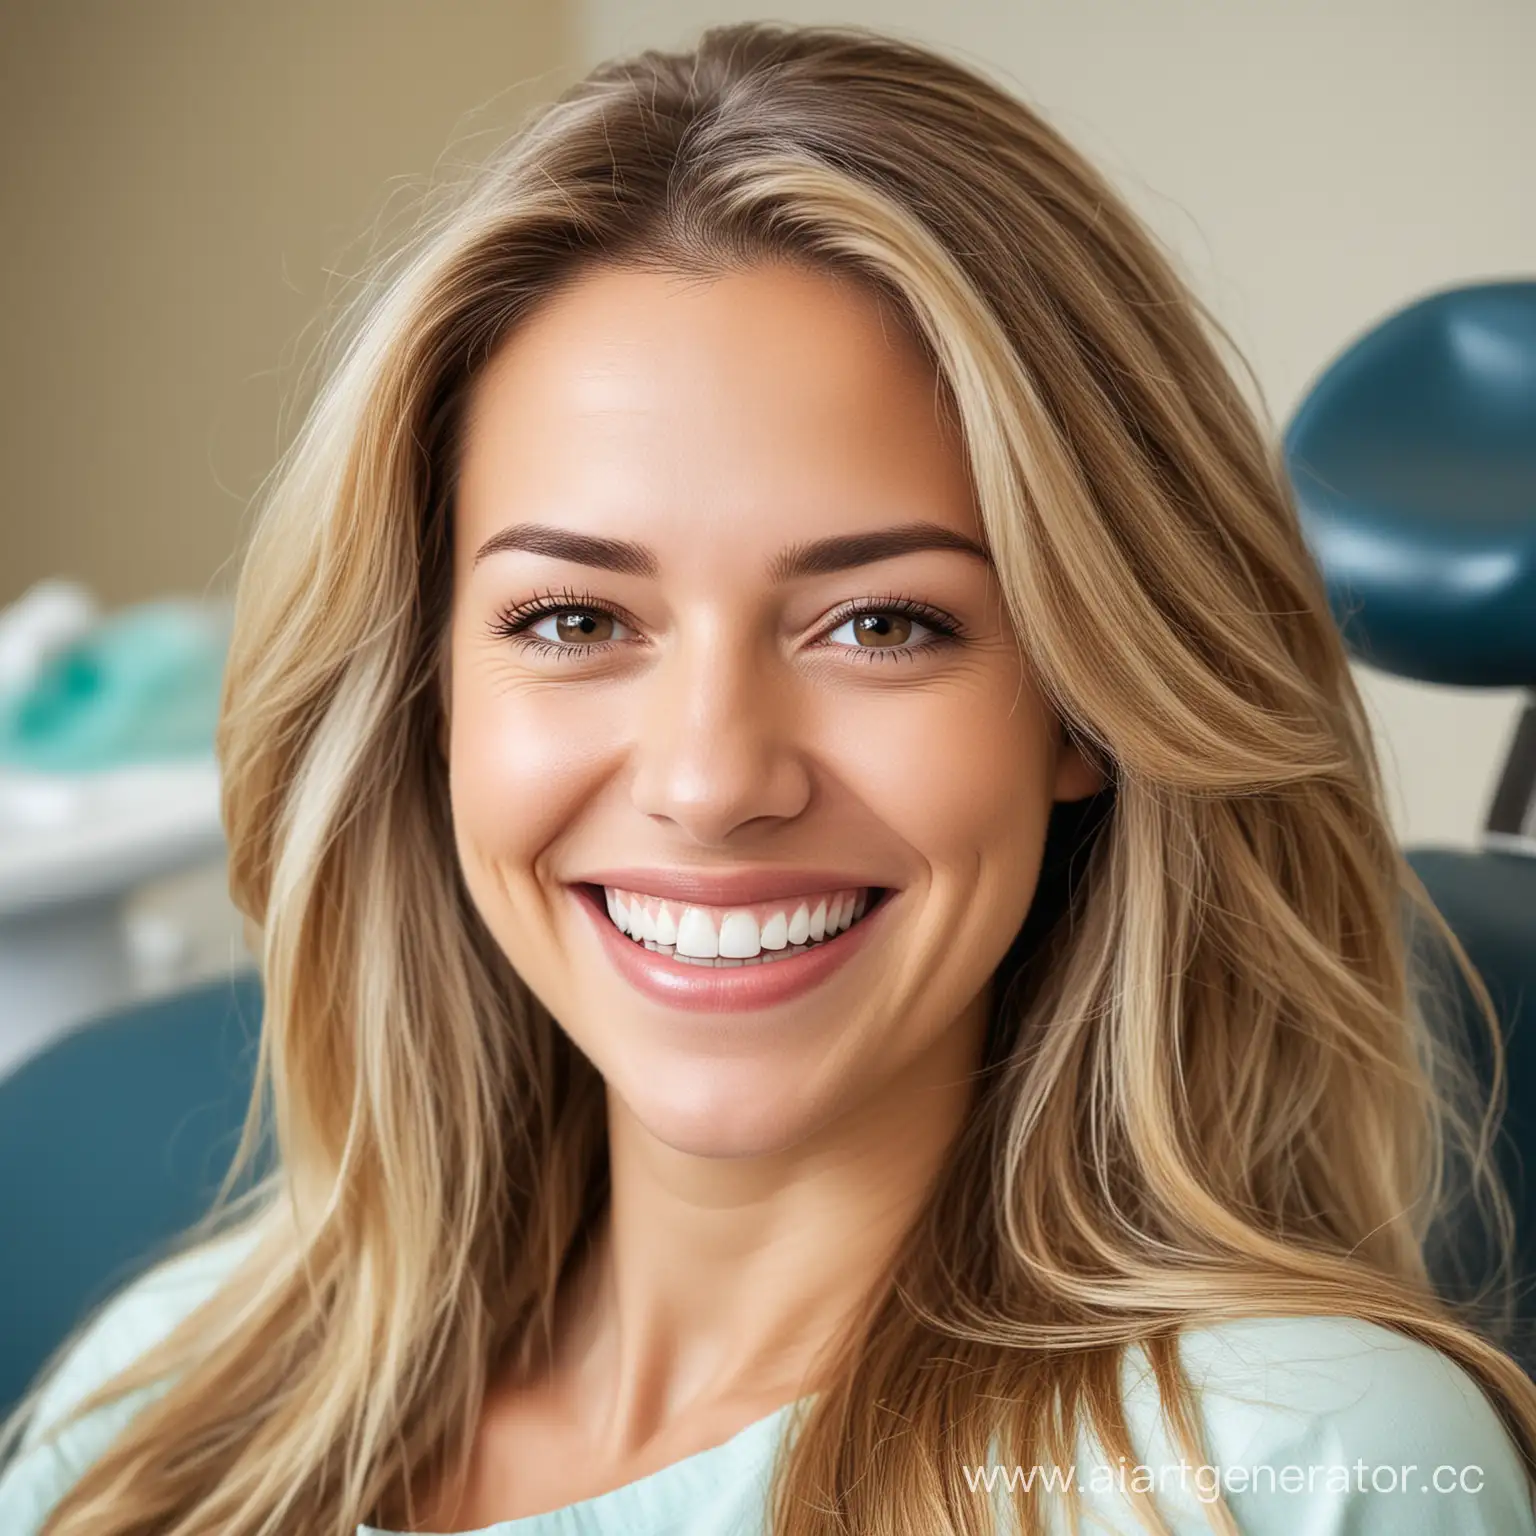 женщина в возрасте, длинные волосы, красивая улыбка, в кресле стоматолога